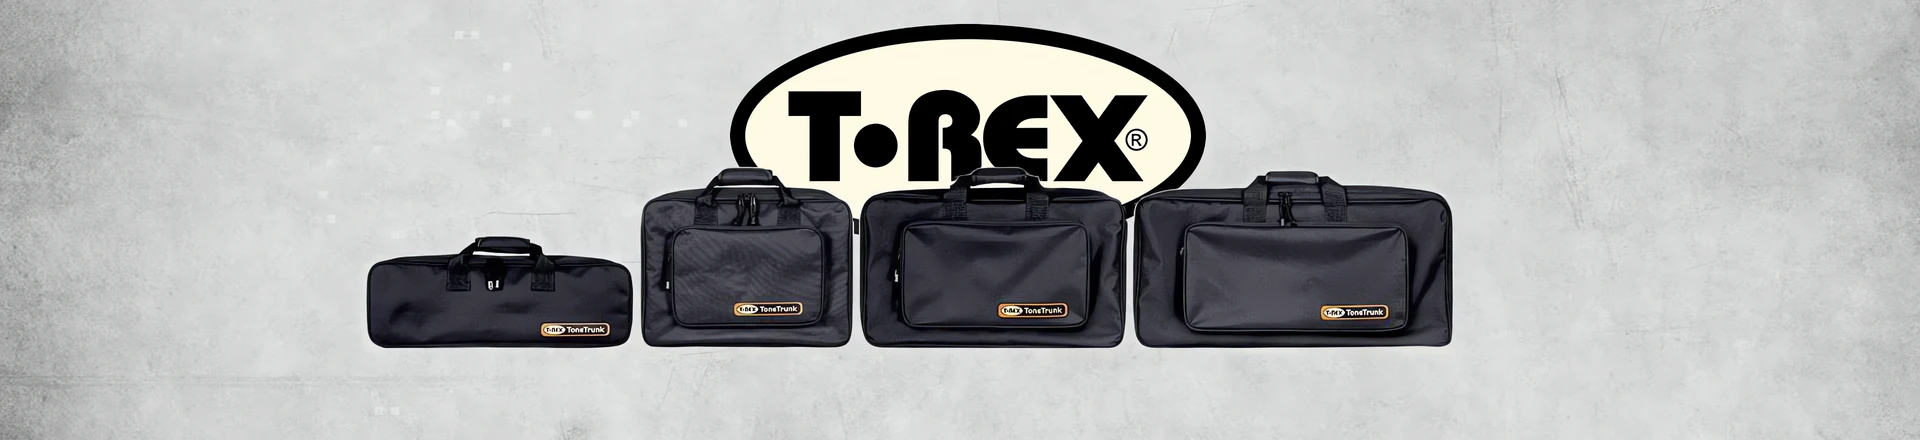 T-Rex Tone Trunk - utwardzane pokrowce z pedalboardem